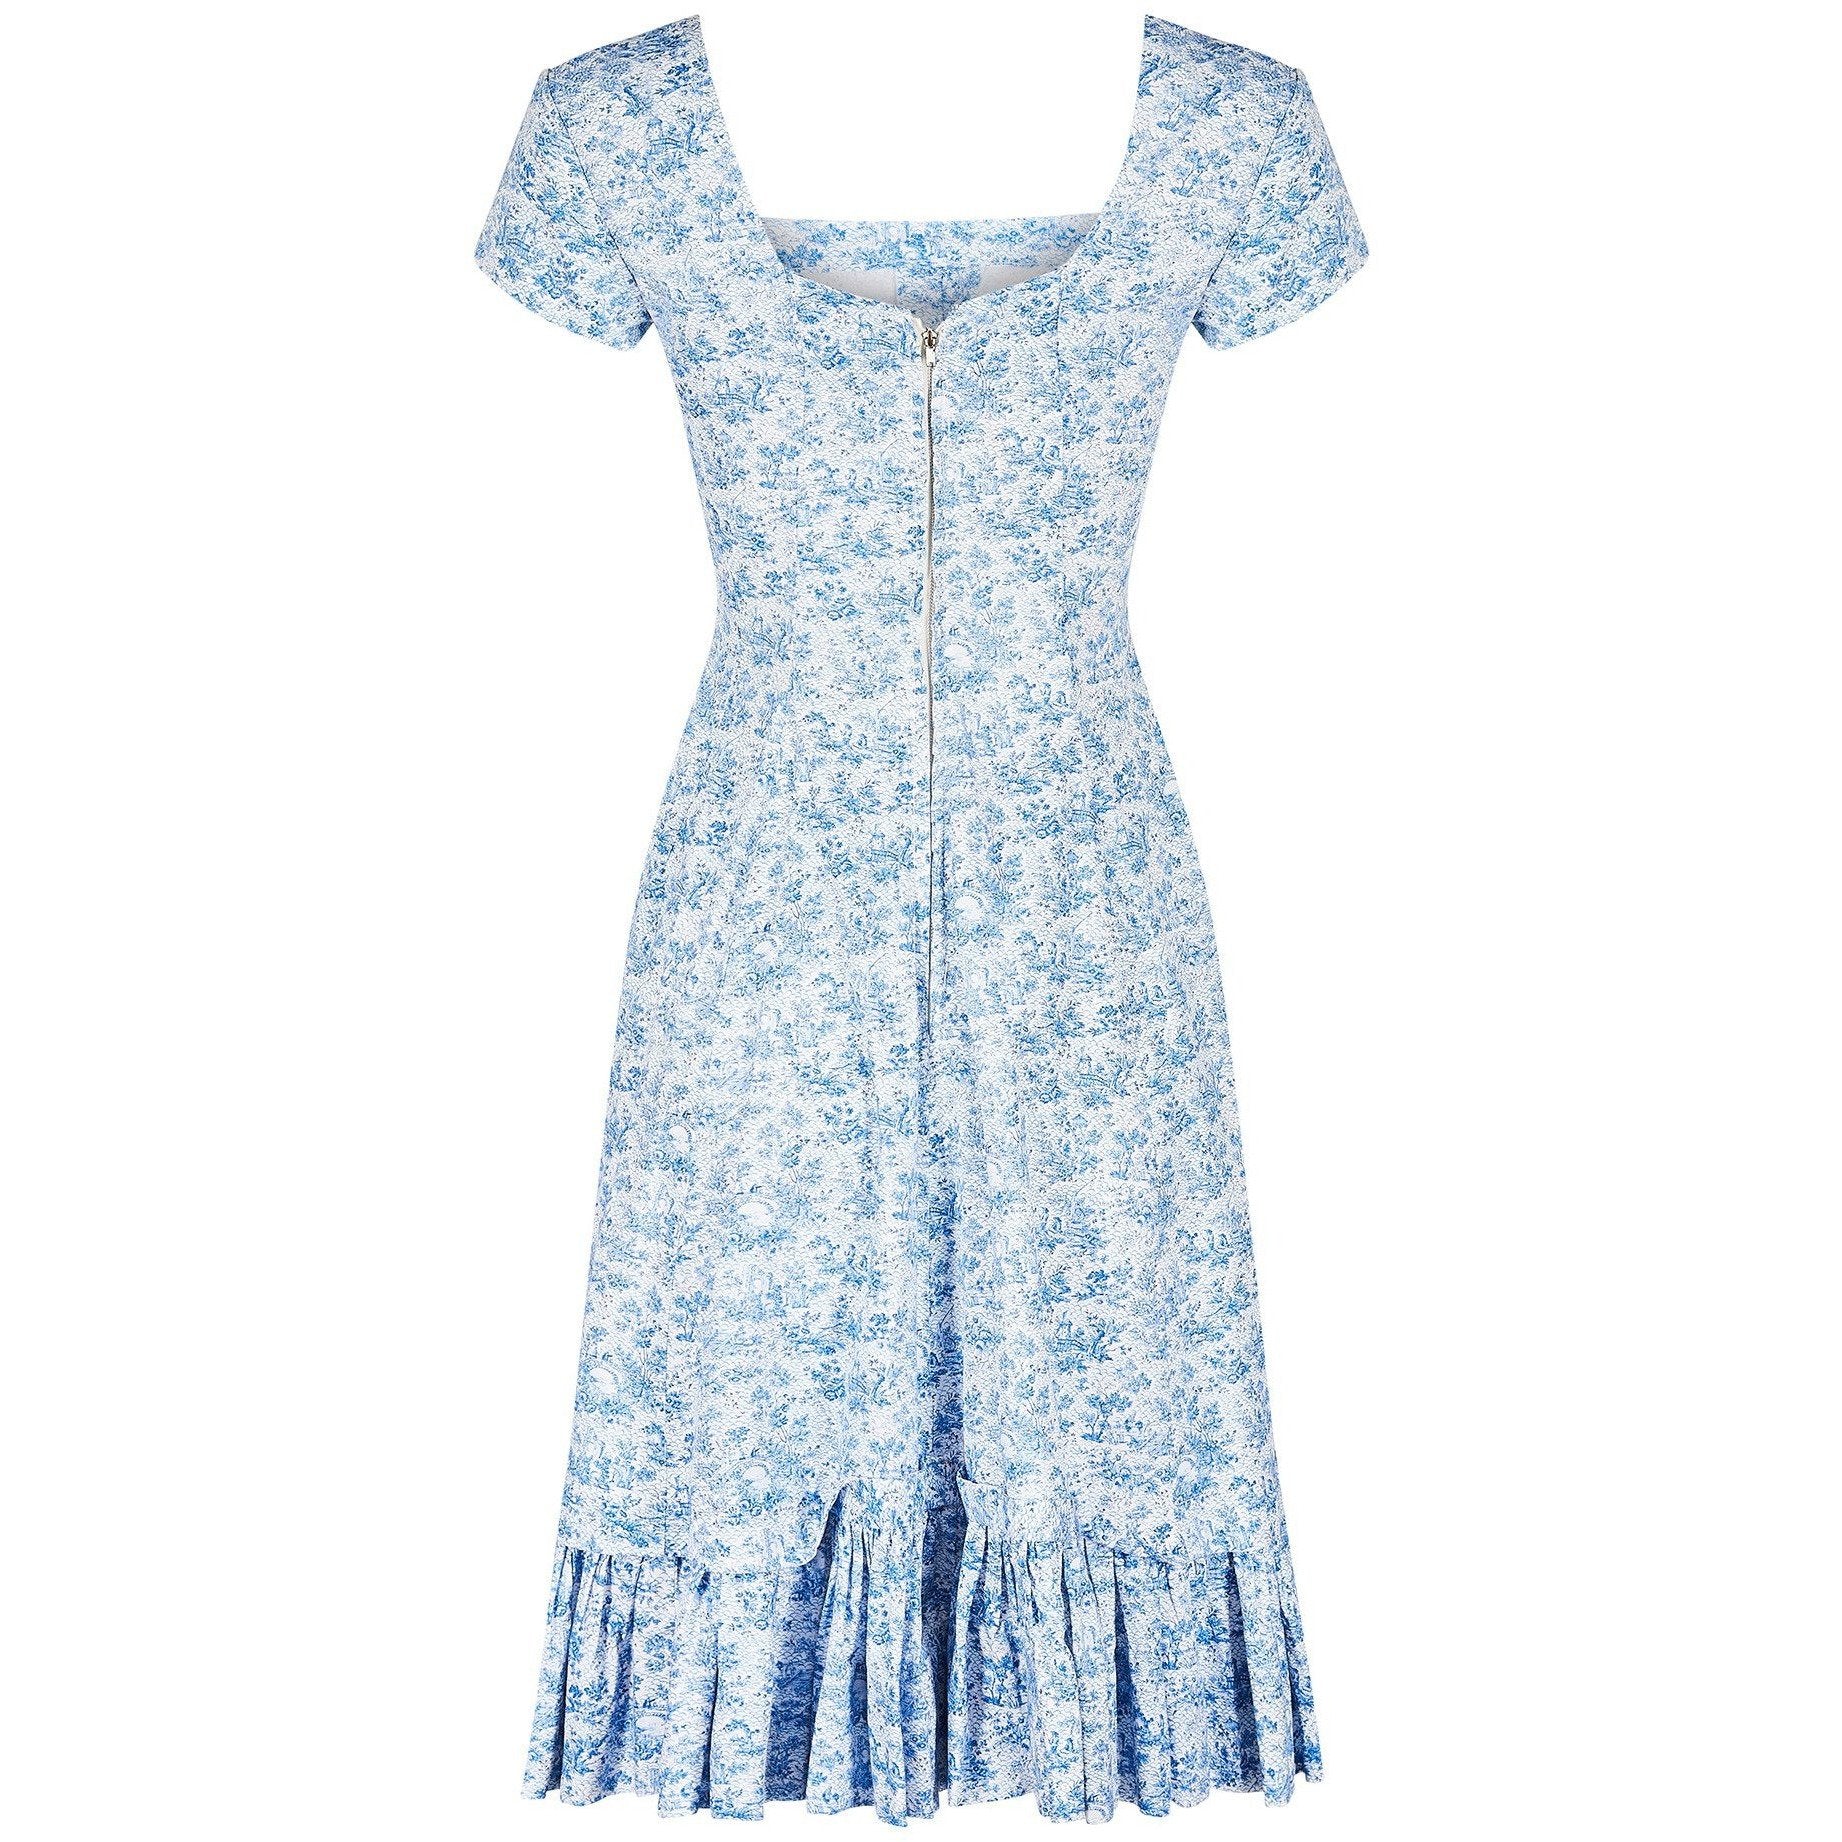 1950s Toile de Jouy Blue and White Cotton Dress– CIRCA VINTAGE LONDON